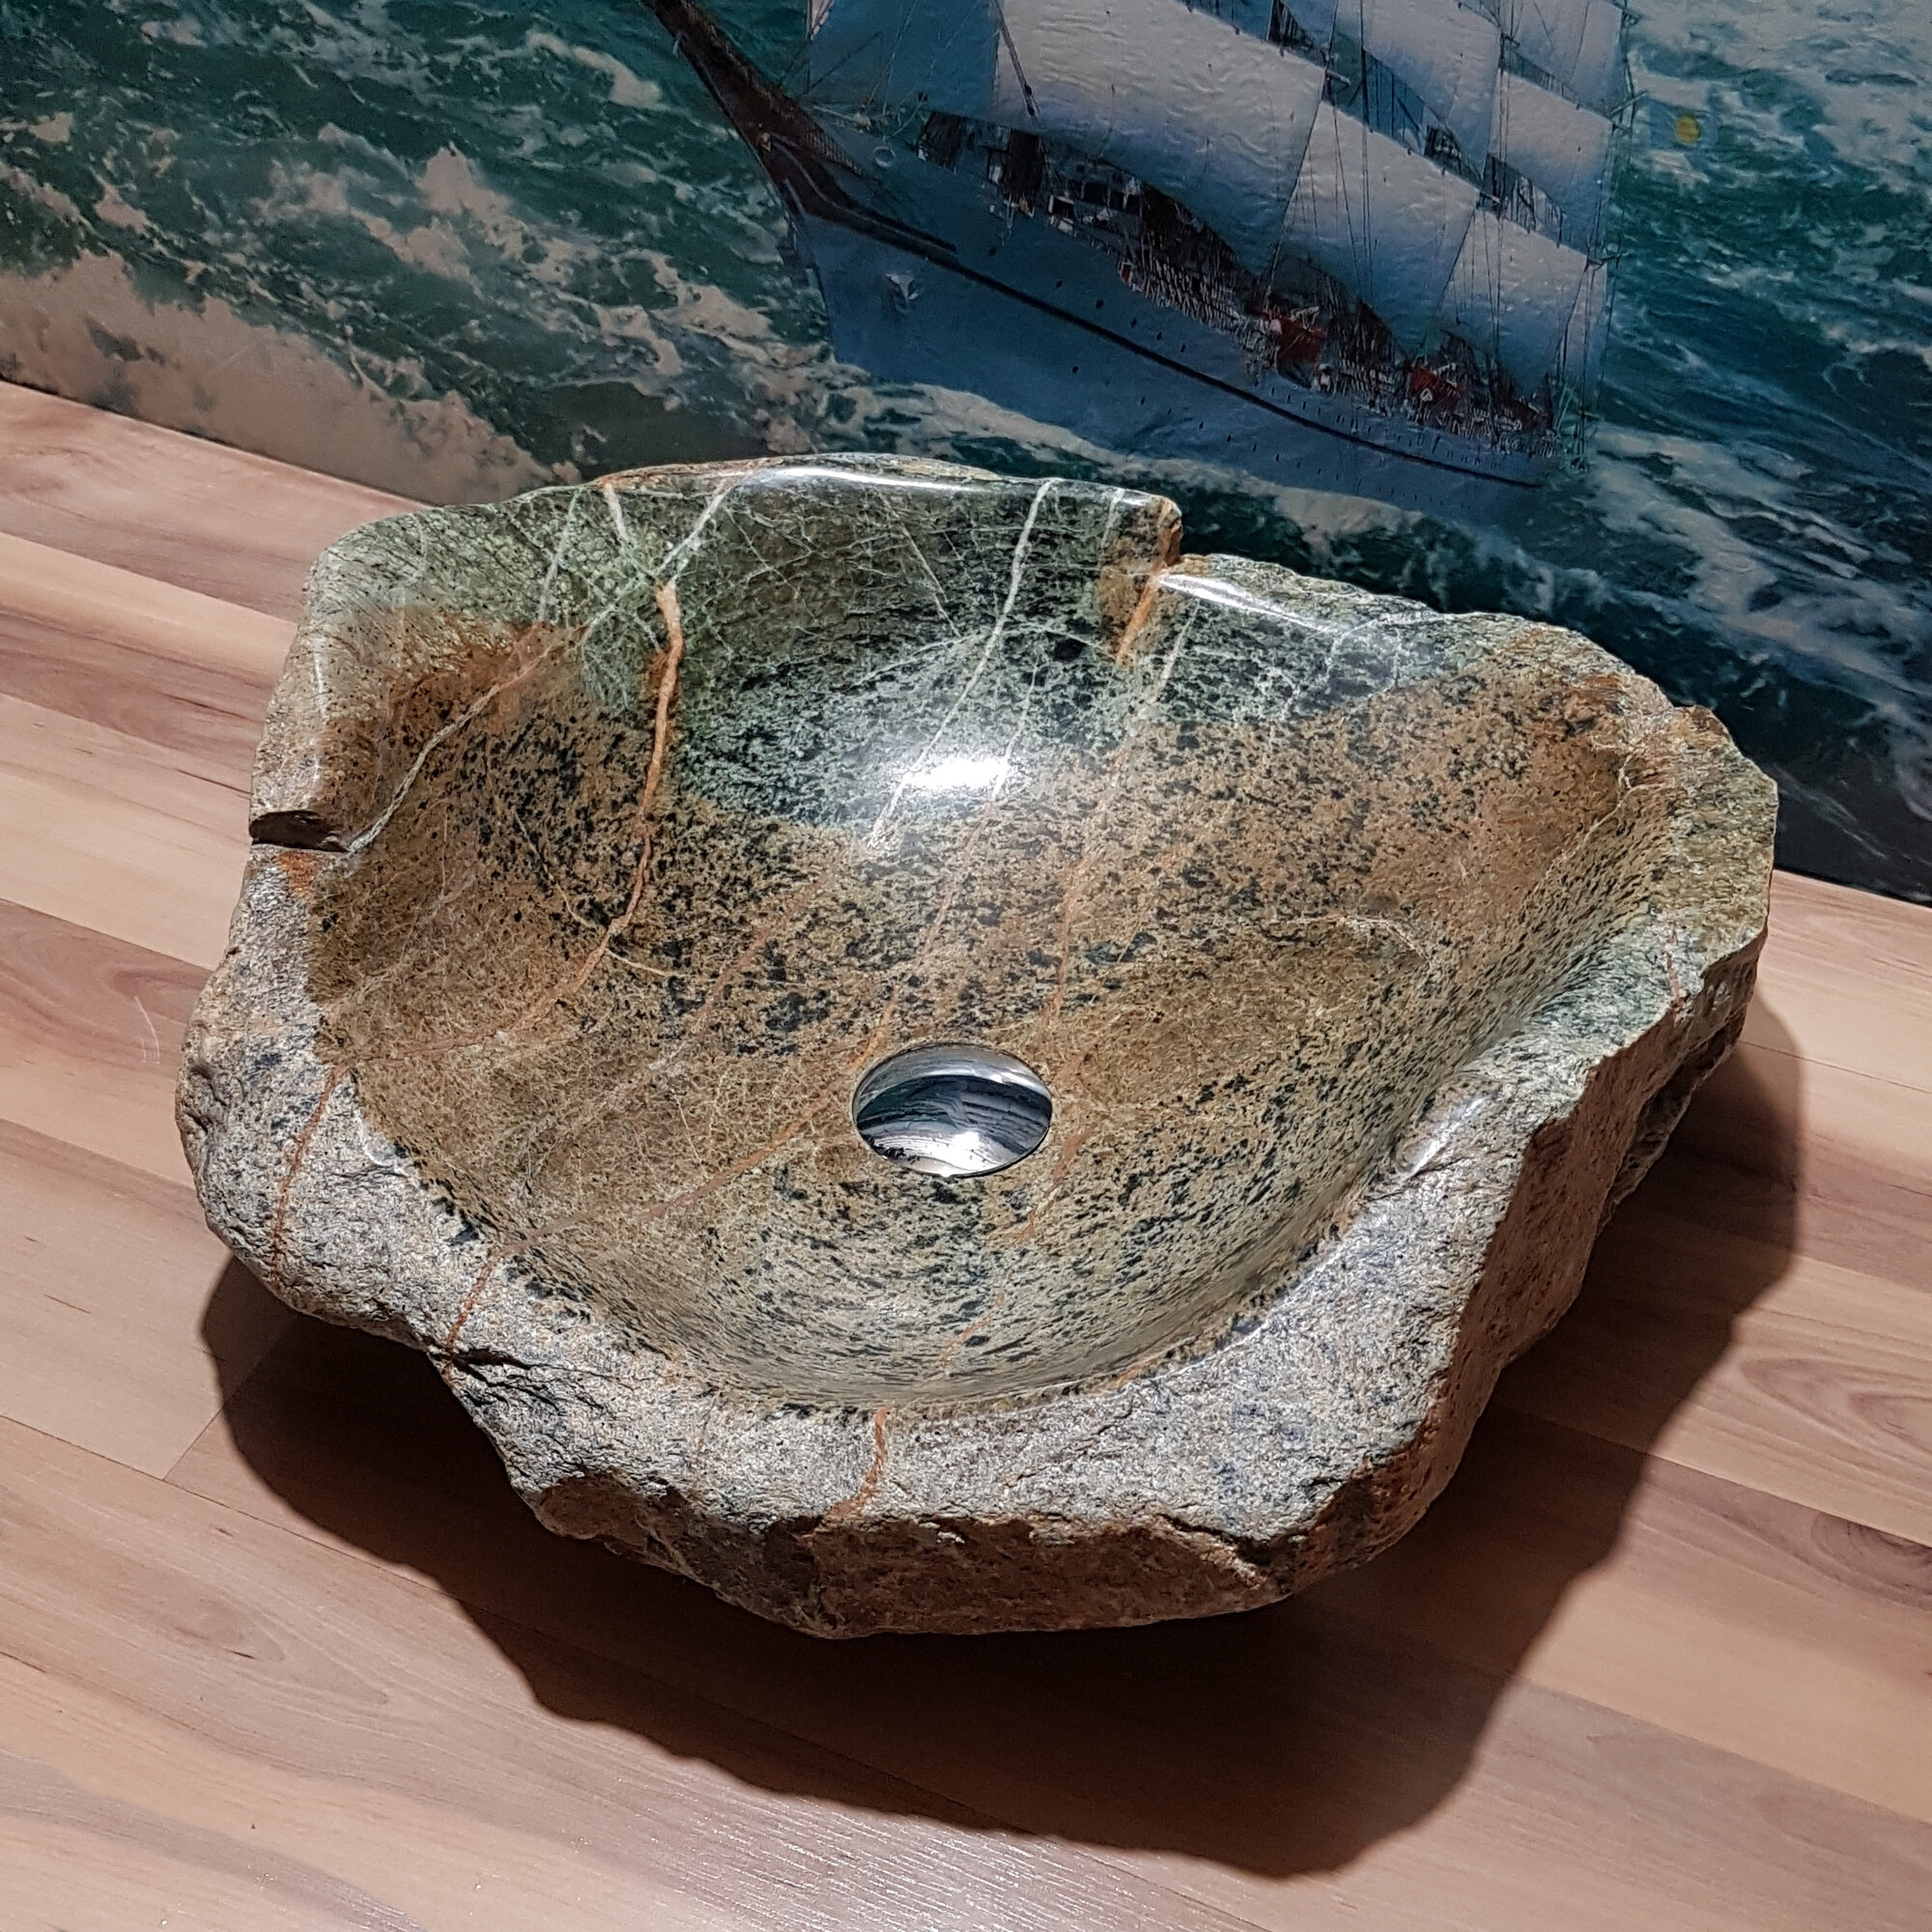 Раковина накладная на столешницу для ванной мойка каменная из натурального /речного/горного камня Кавказа 48х47х13 см